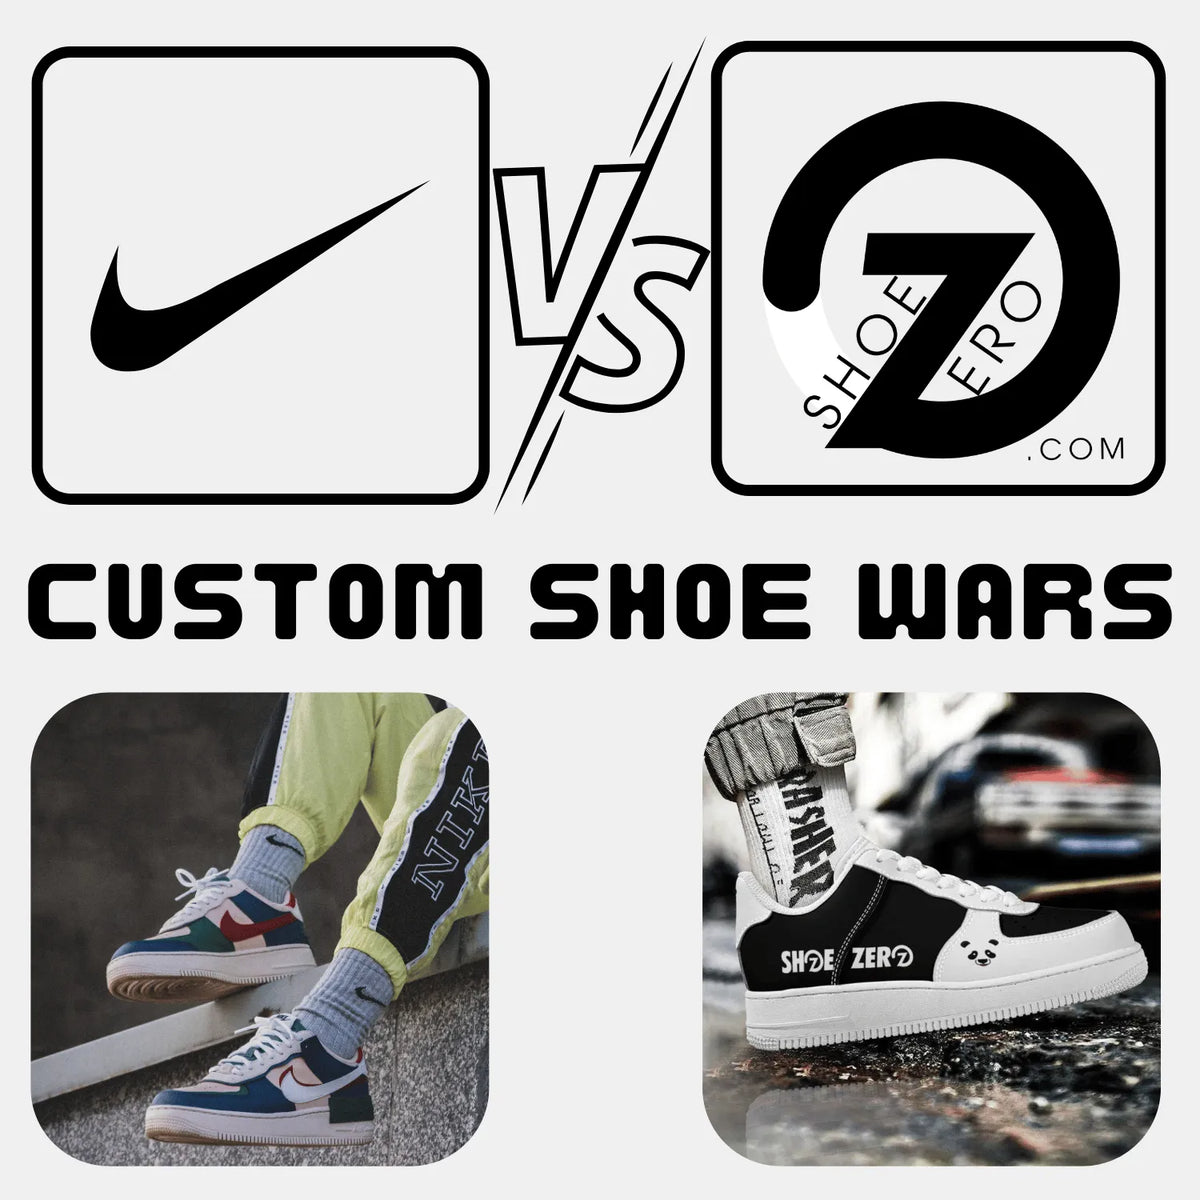 The Custom Shoe War - Nike Vs Startup Shoe Zero